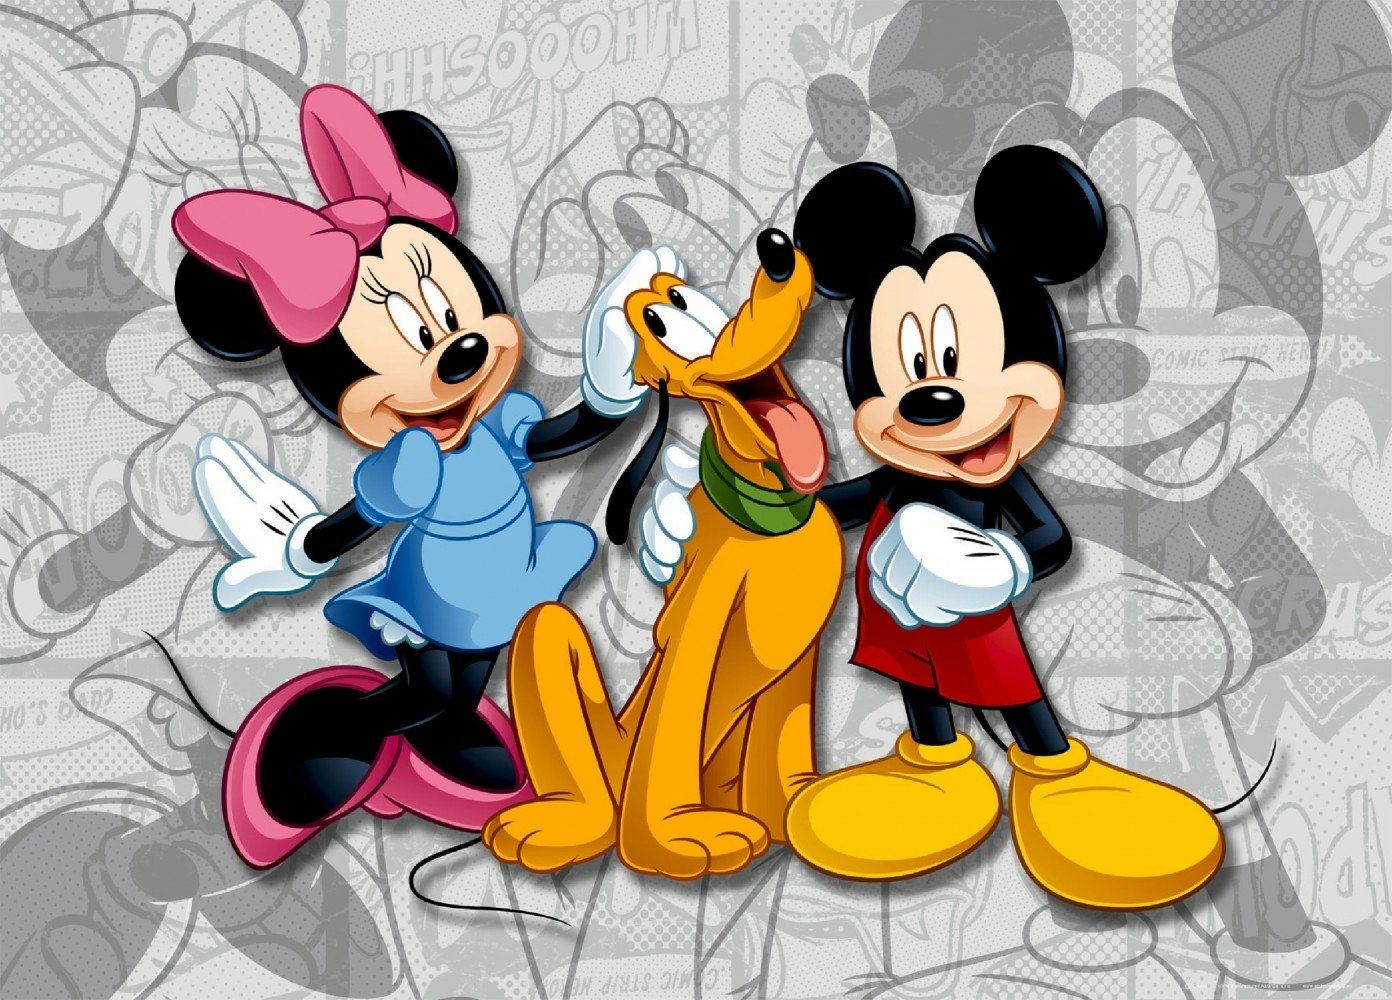 Disney Papel De Parede And Planos De Fundo 1392x1000 Id453343 Wallpaper Abyss 9217